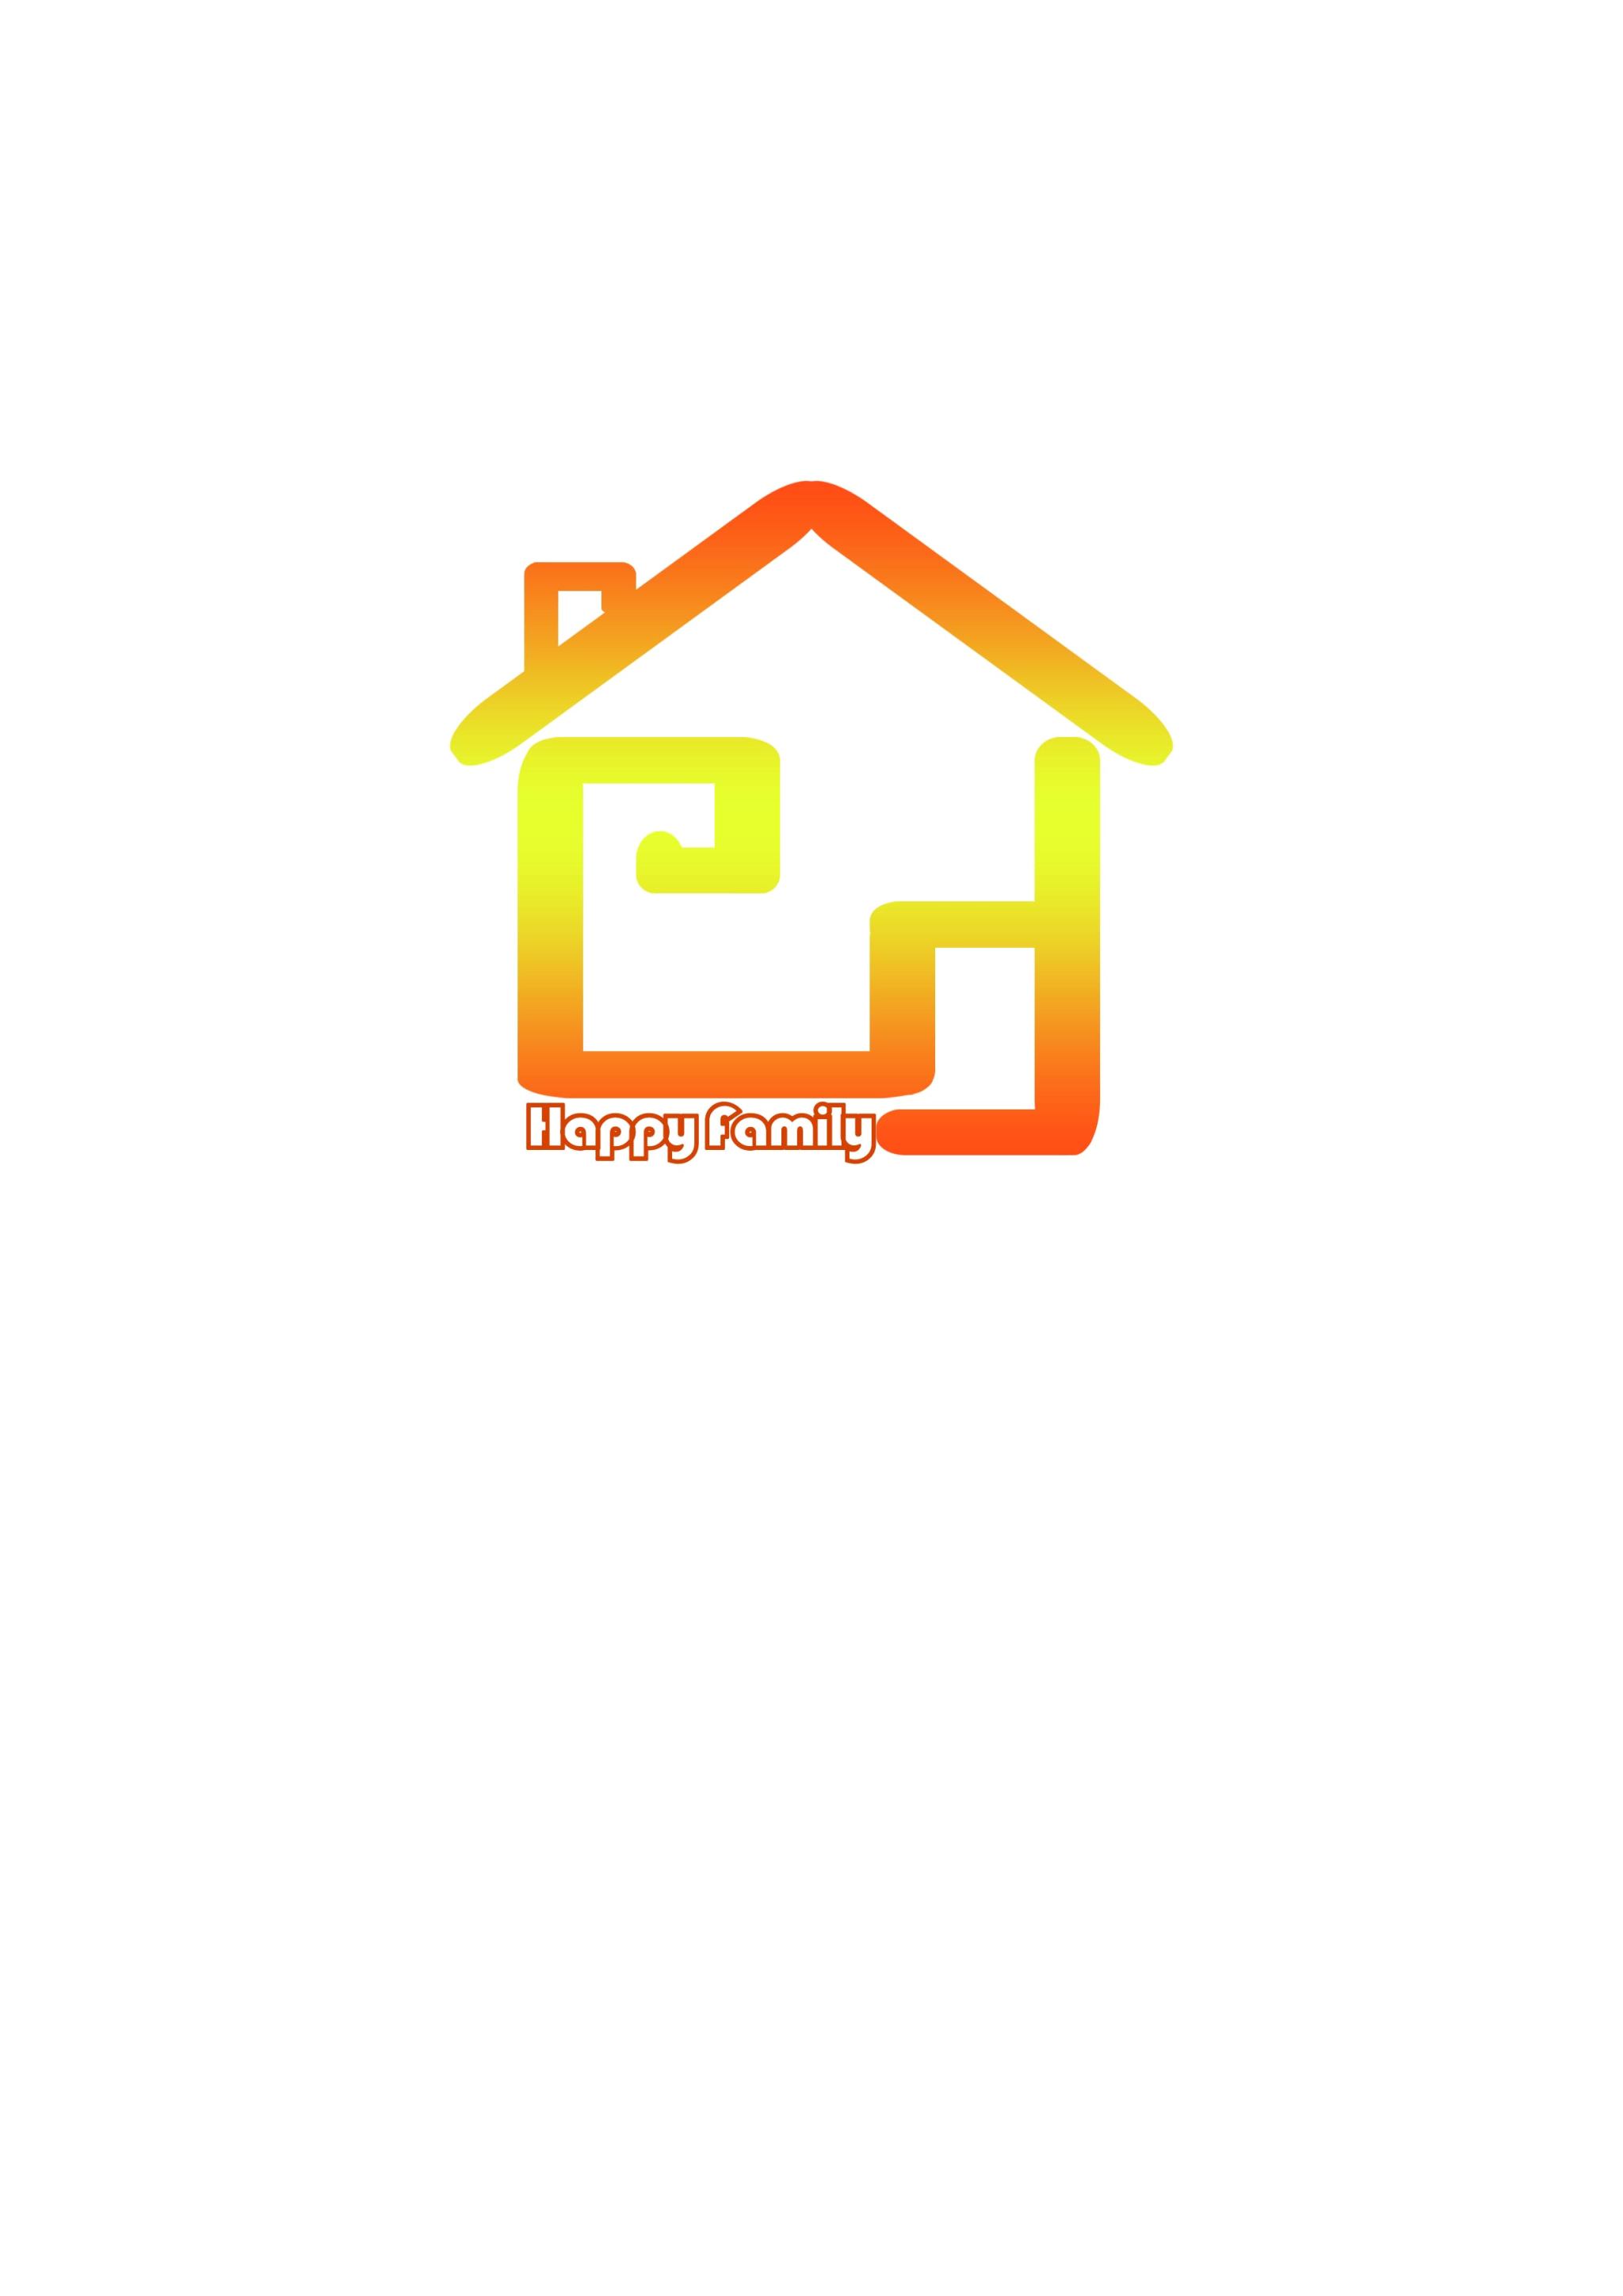 此logo设计核心是由"创"字变形而来,简洁,美观符合创建幸福家庭的理念